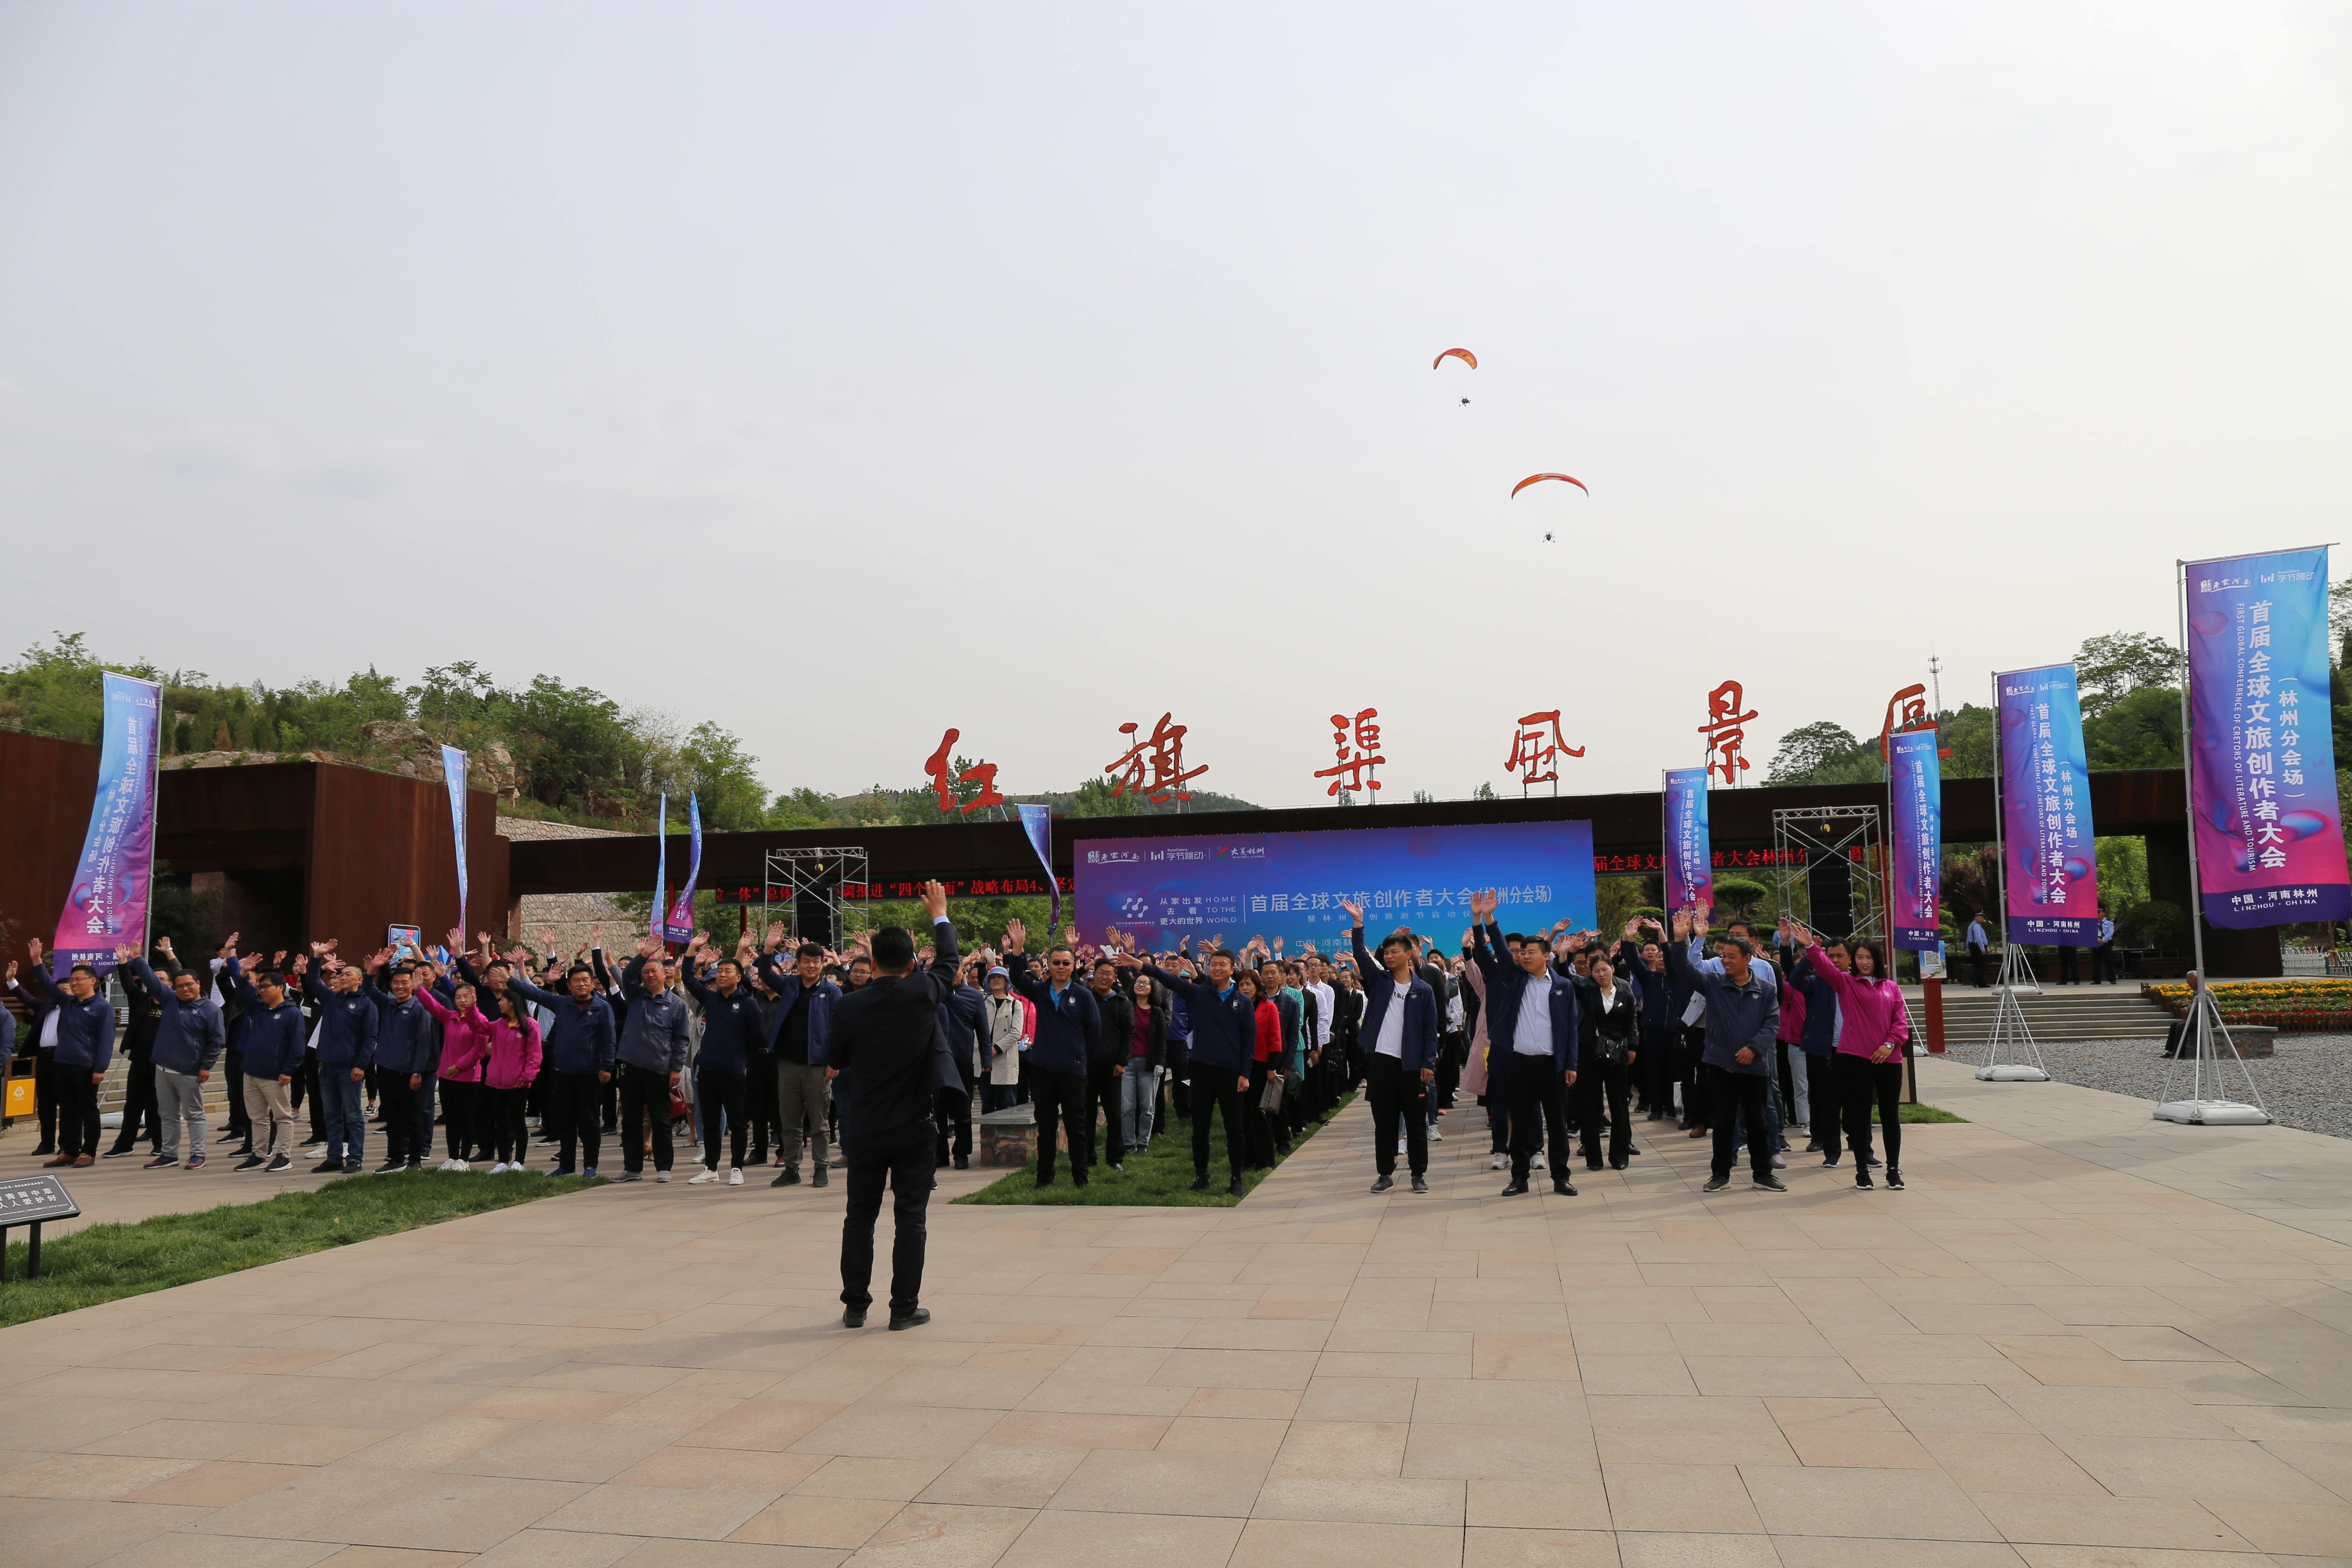 世界您好--这里是河南林州：2019首届全球文旅创作者大会暨林州文创旅游节正式启幕